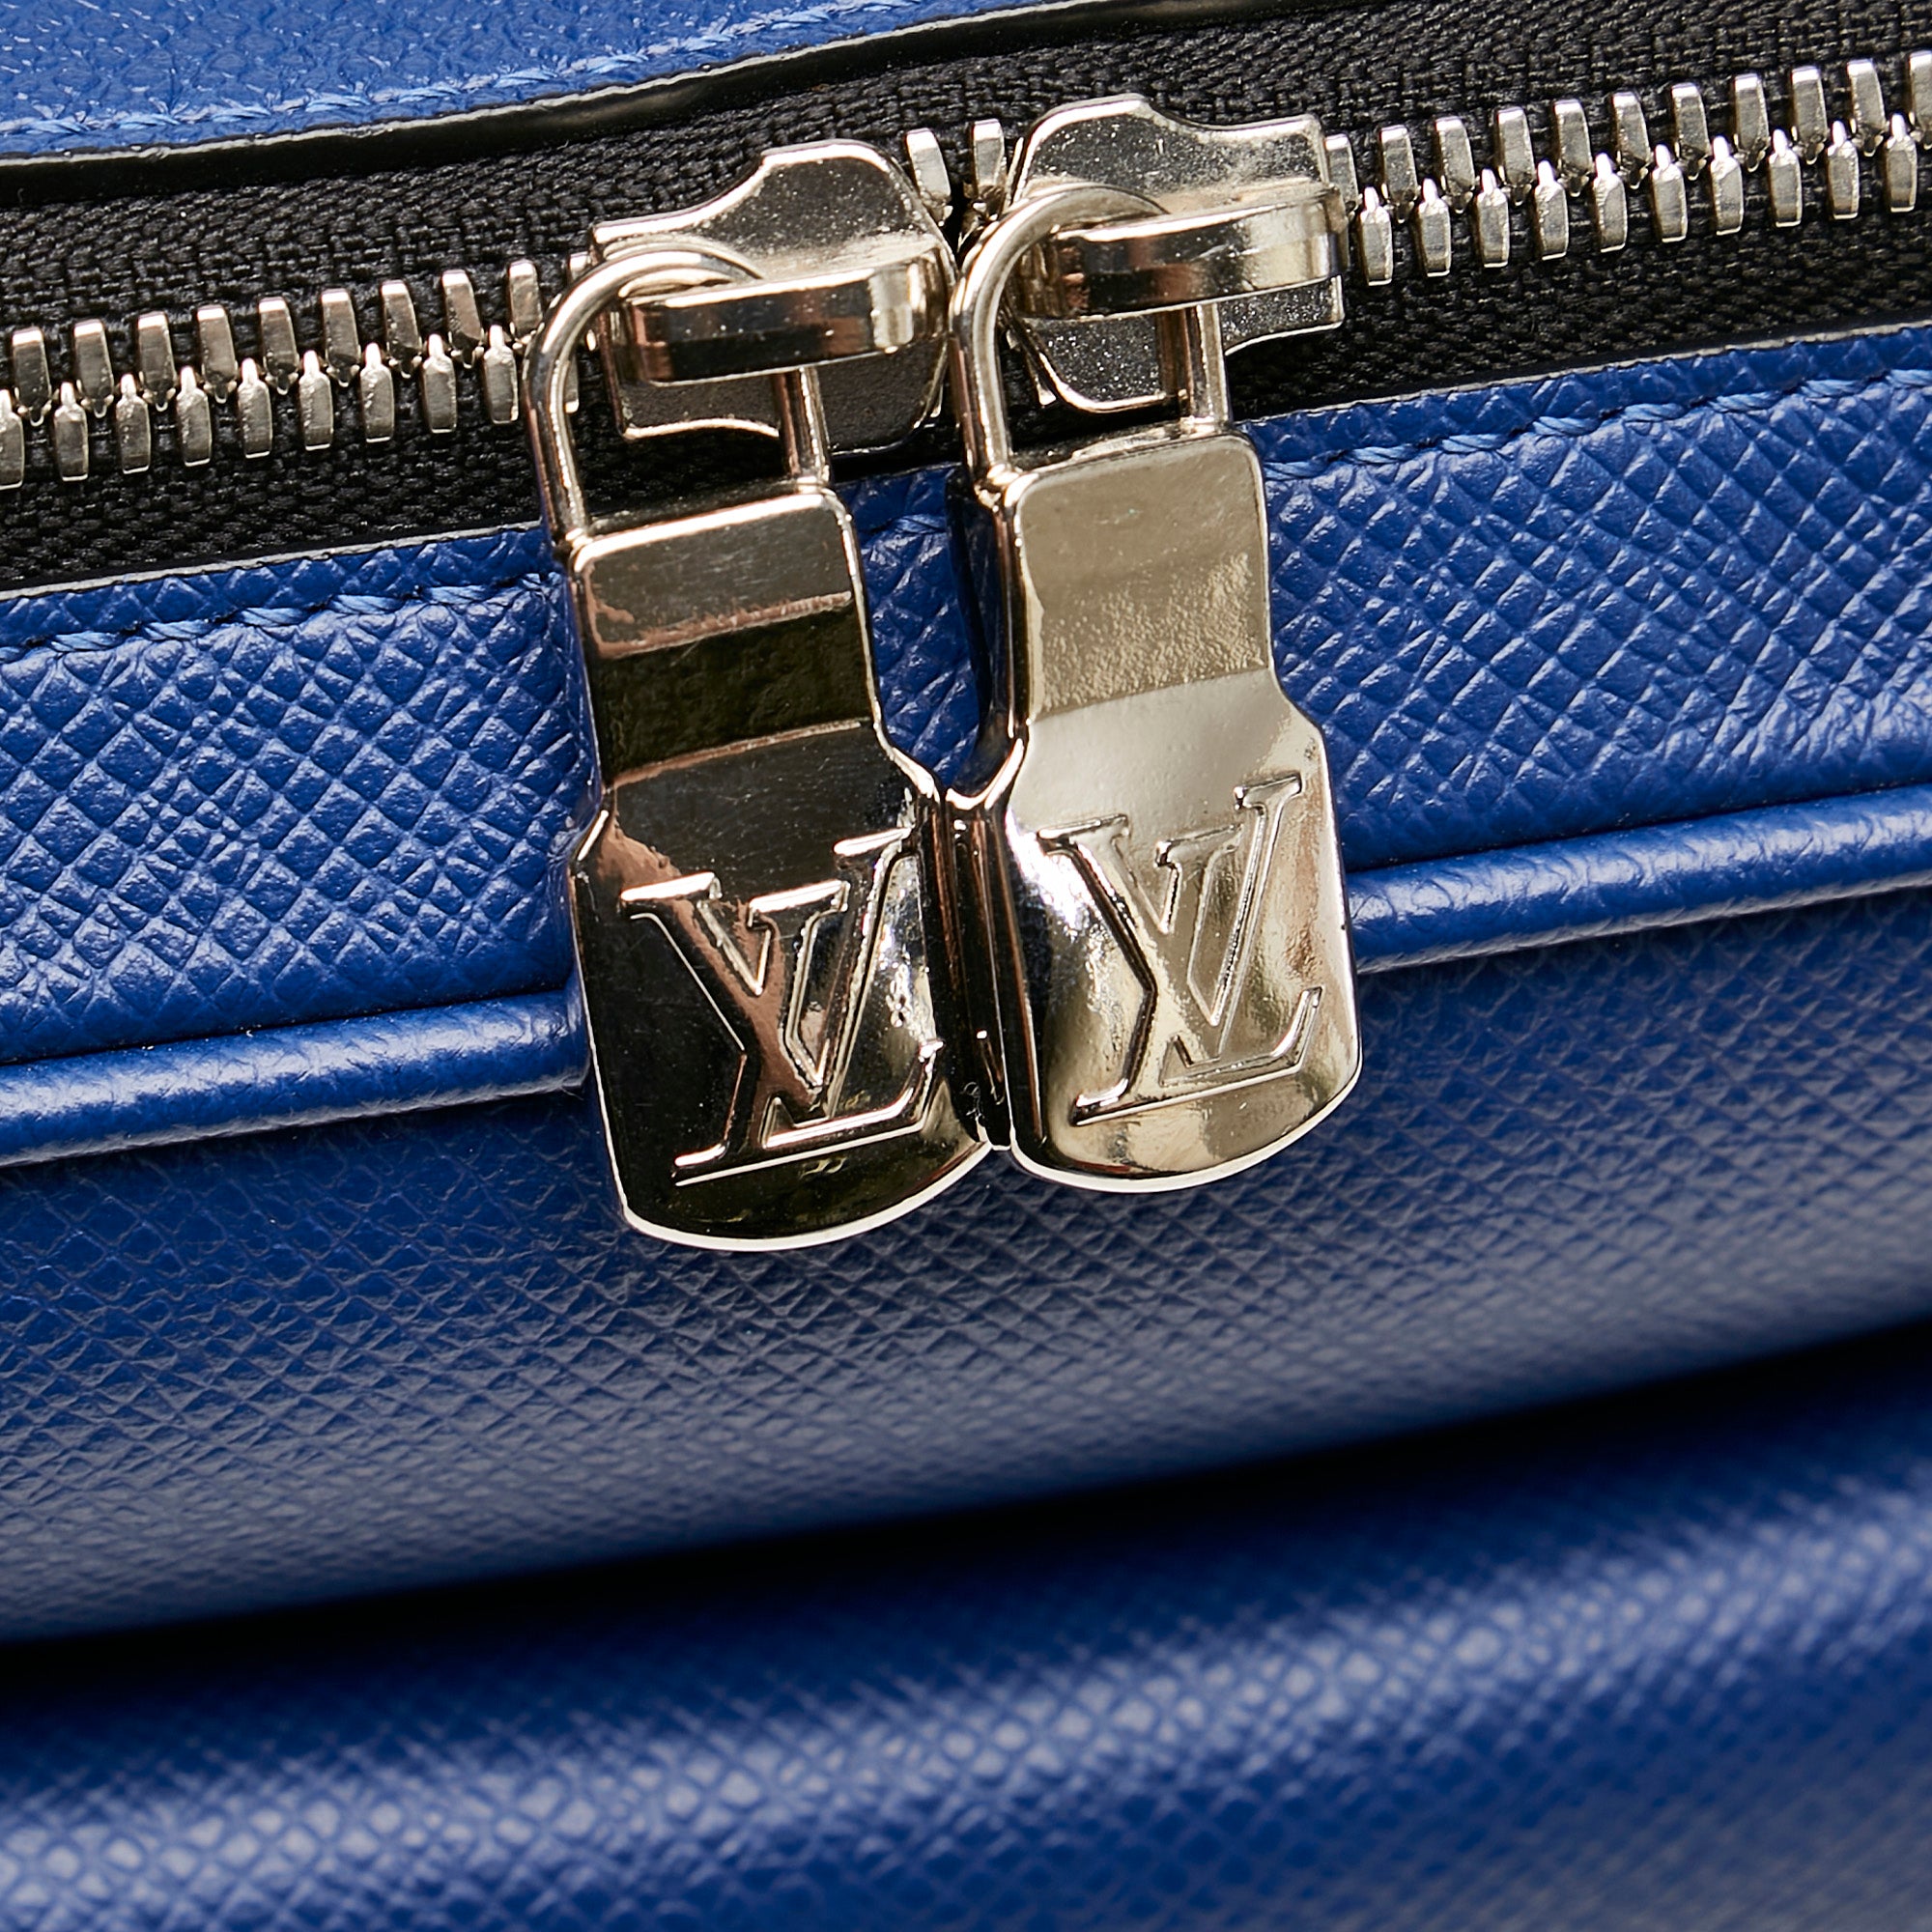 Louis Vuitton Men's Outdoor PM Shoulder Bag